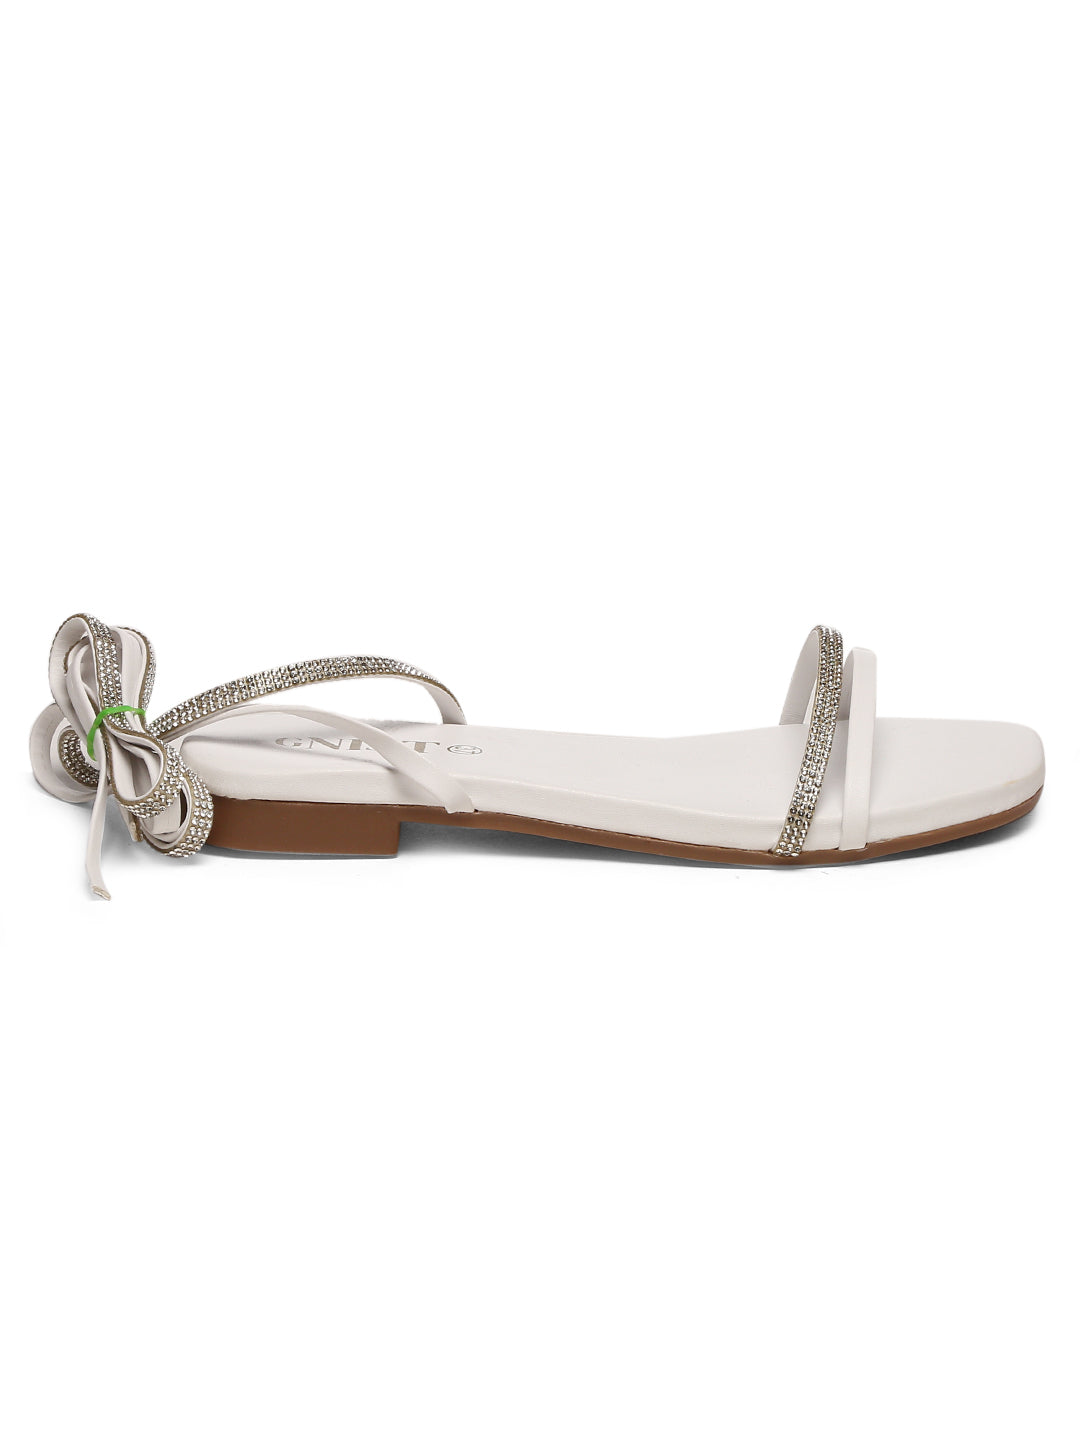 GNIST White Embellished Tie up Flat Sandal